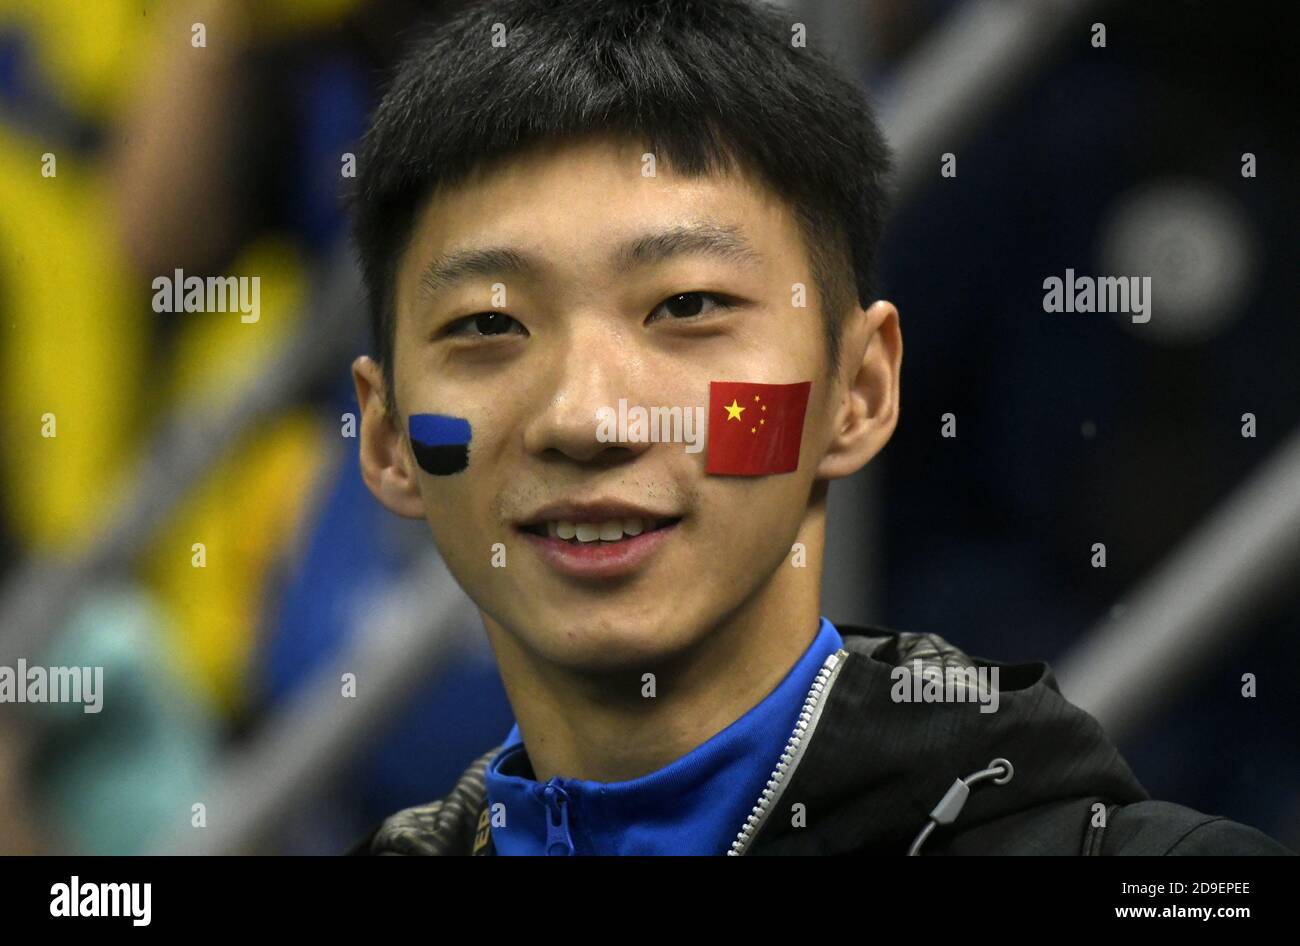 Der Fußballfan des jungen chinesen Inter Mailand, der mit bemalten Flaggen auf seinem Gesicht porträtierte, im fußballstadion san siro in Mailand. Stockfoto